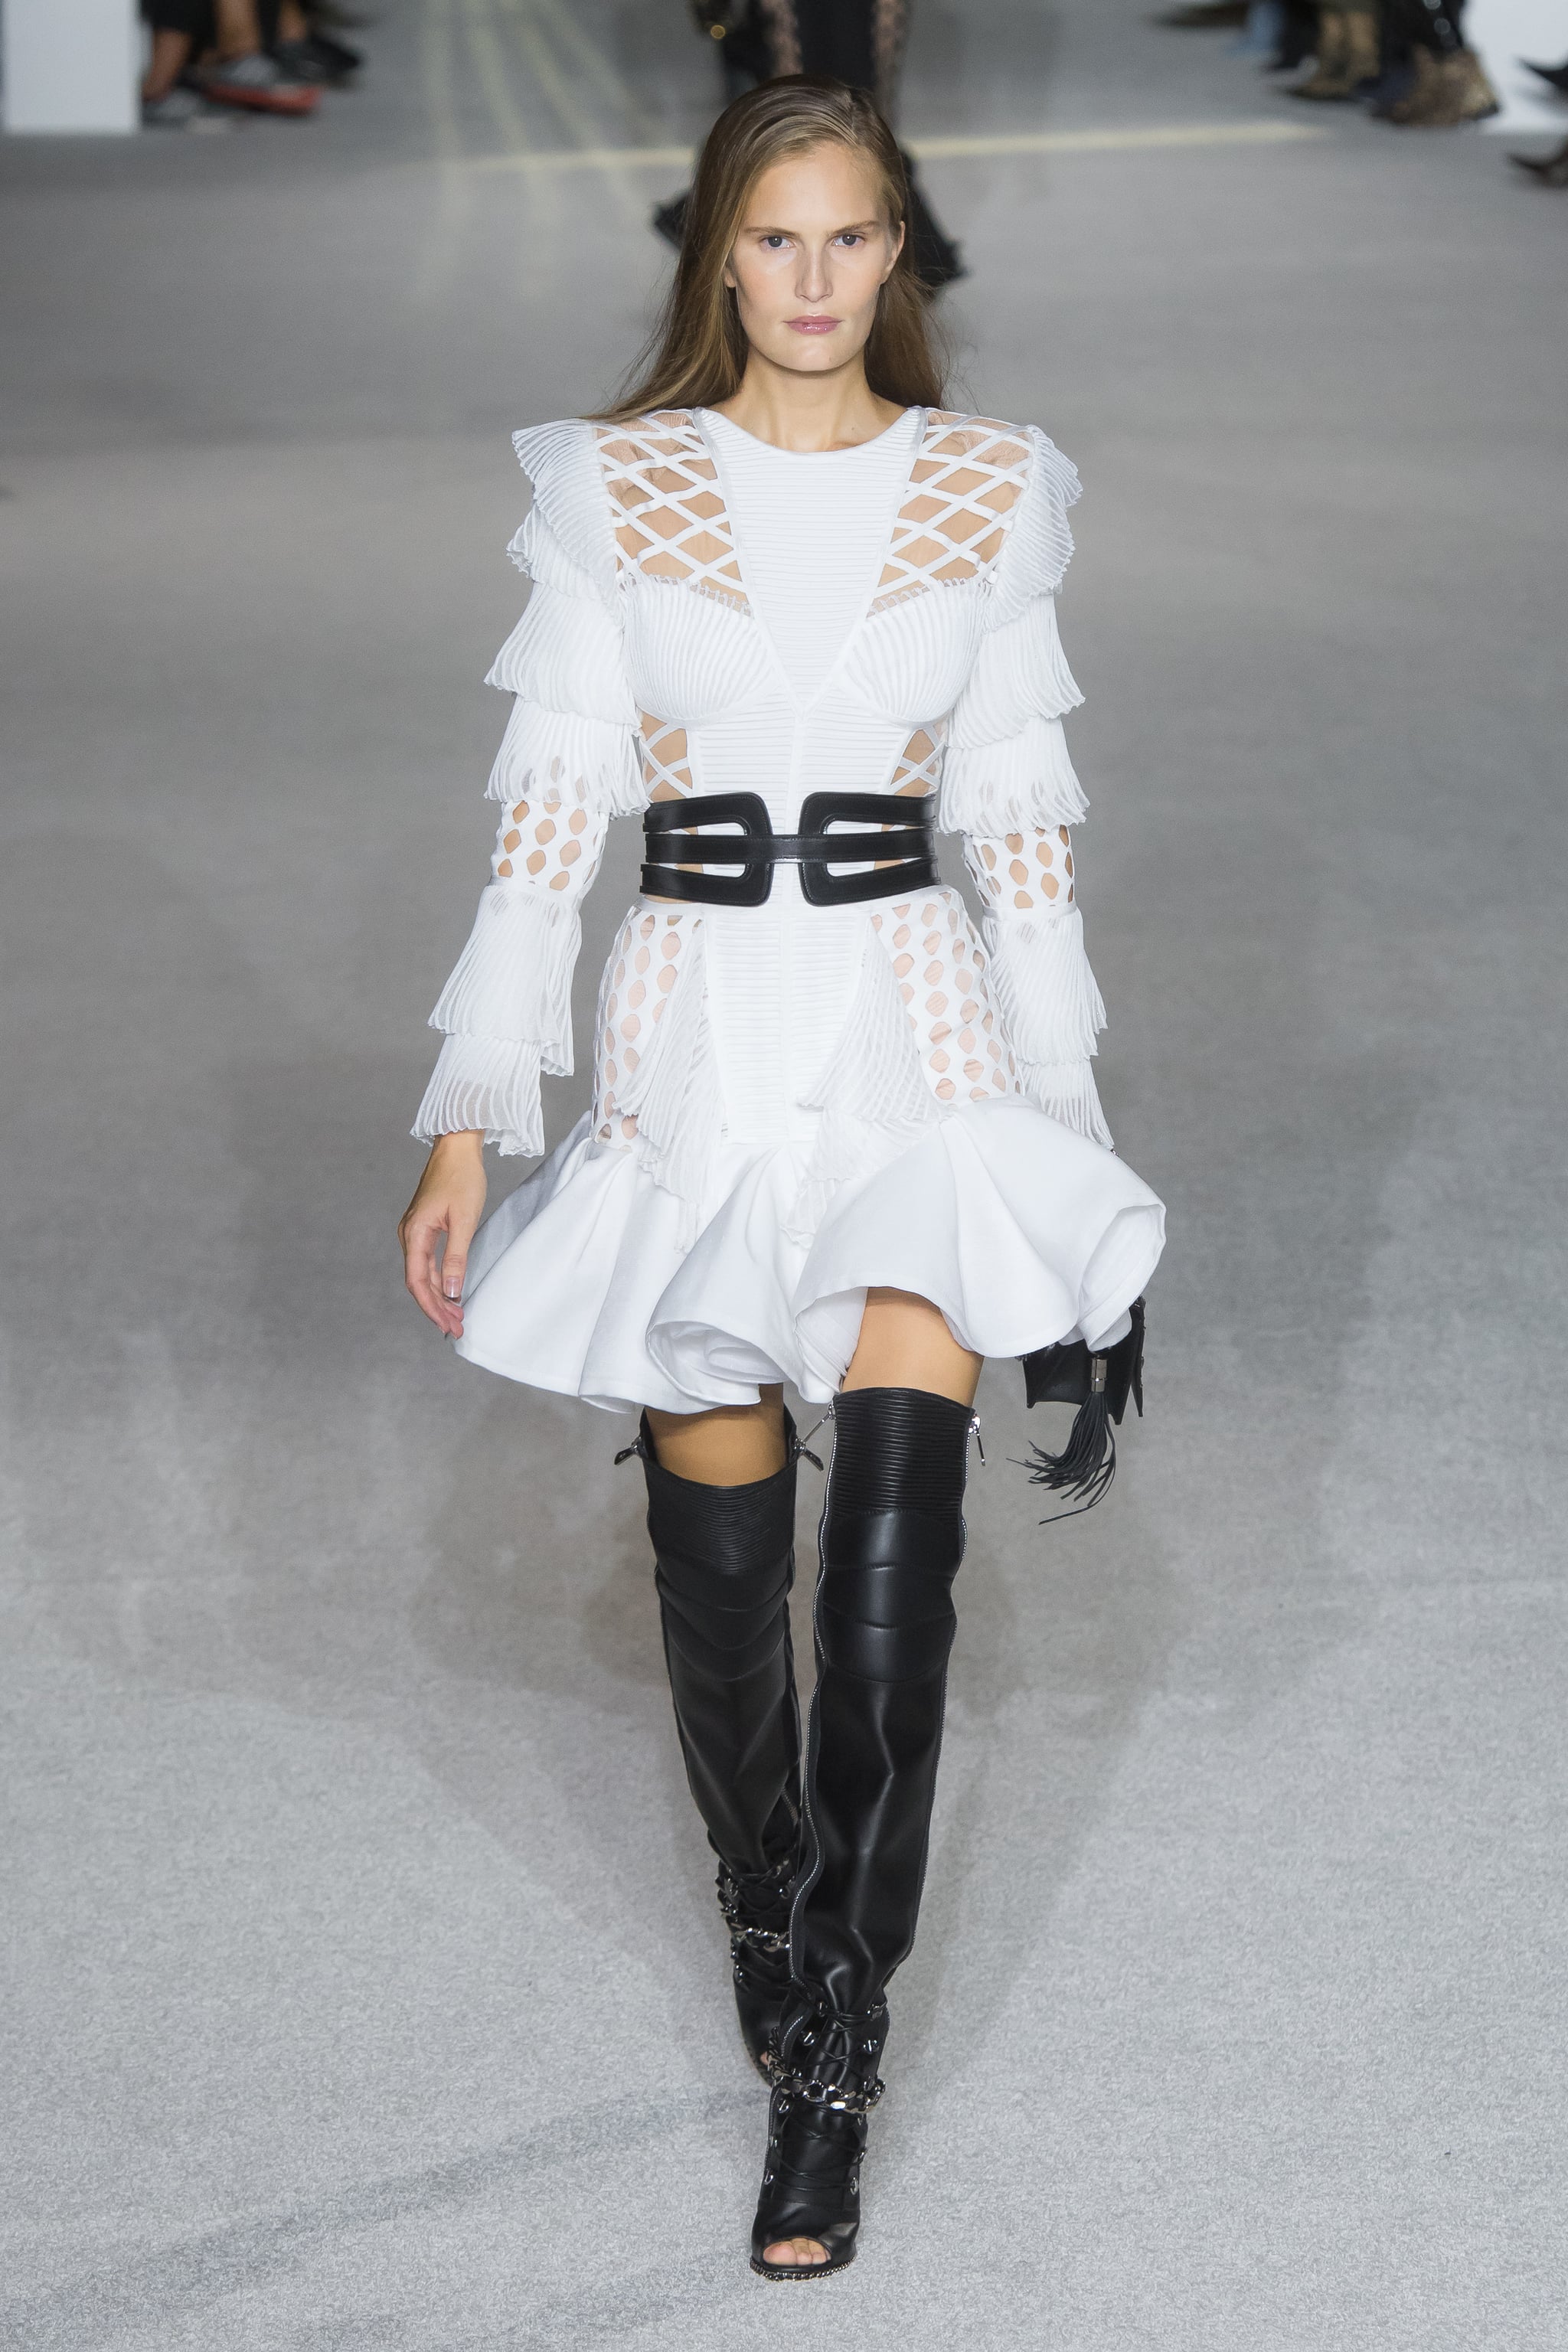 Banke charme sekvens Jennifer Lopez White Balmain Dress | POPSUGAR Fashion